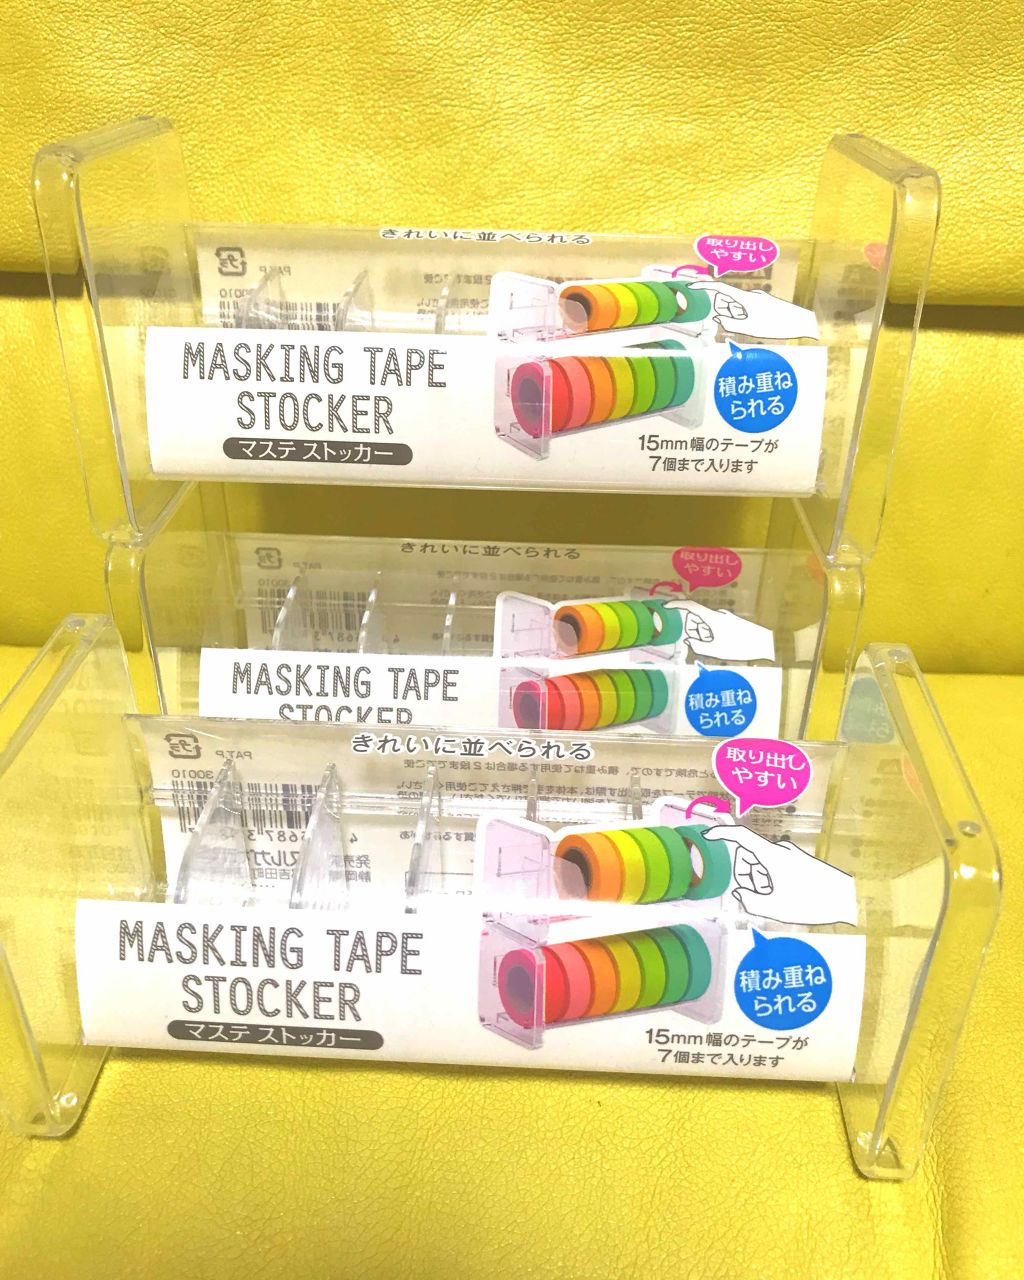 マスキングテープボックス Daisoの口コミ 超優秀 100均で買えるおすすめコスメ 単色アイシャドウの収納 By うなぎ Lips